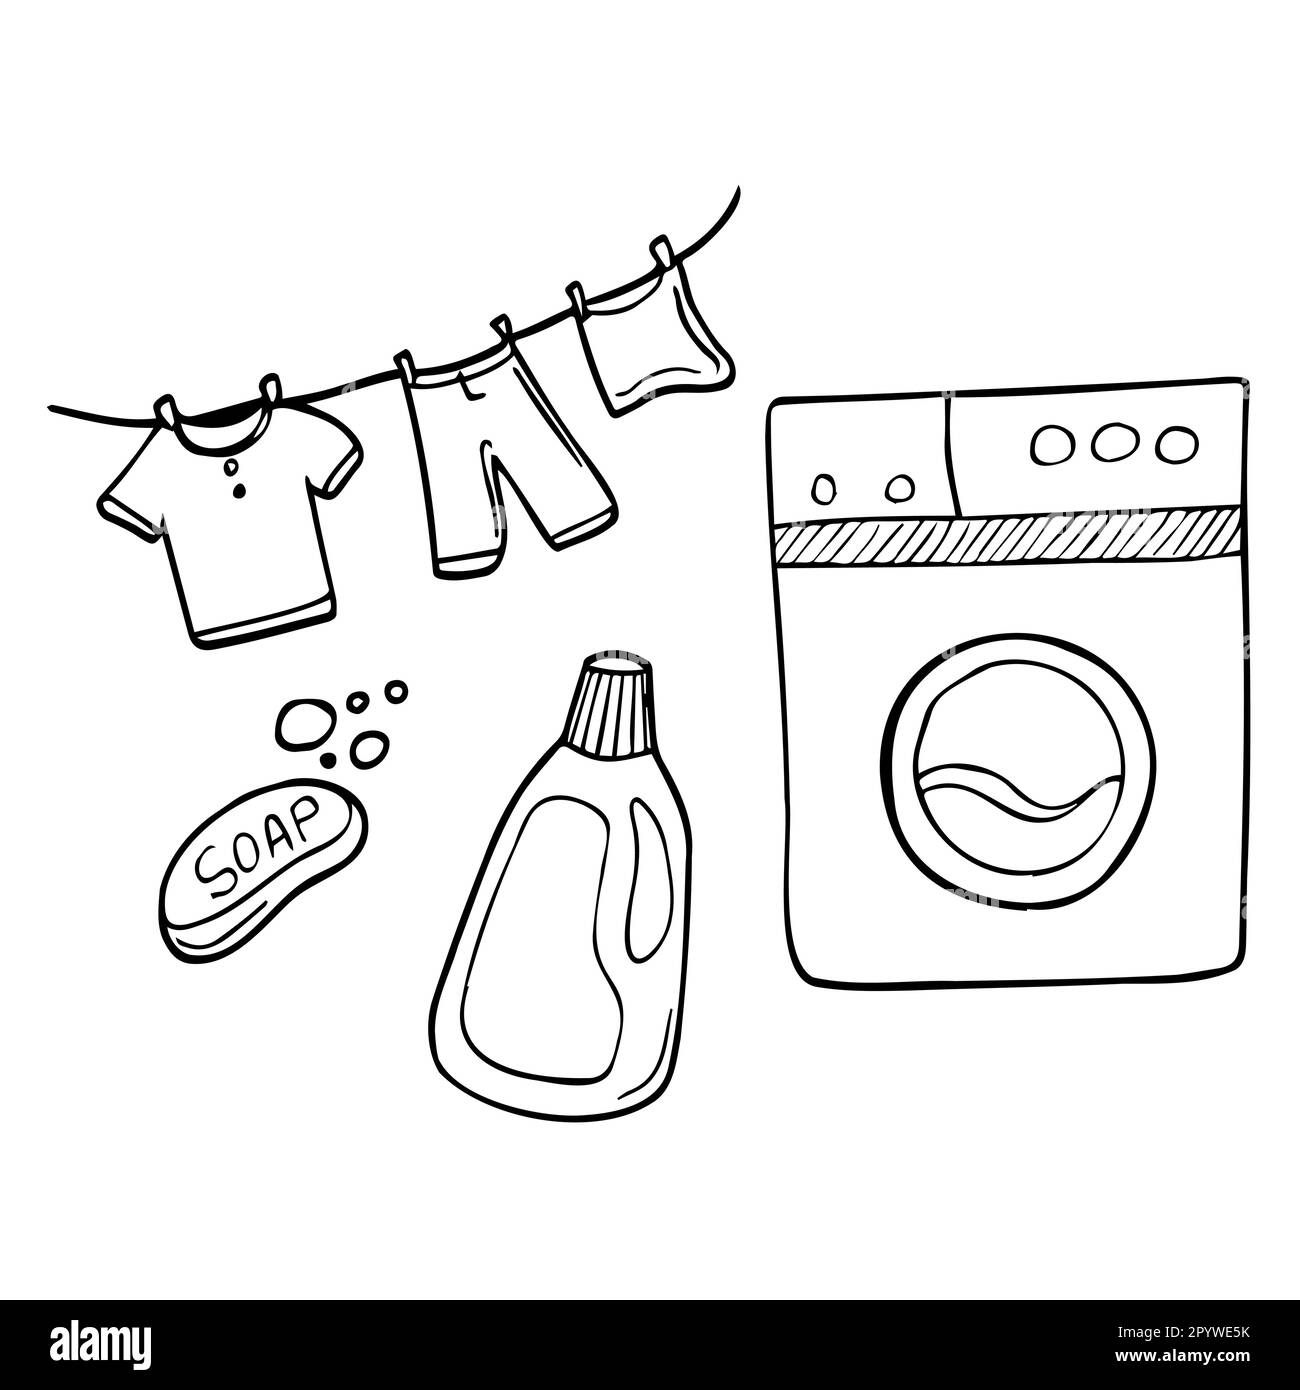 Laundry service hand drawn doodle icons set, vector illustration. Washing,  drying and ironing symbols, washing machine, laundry basket, clothes drying  Stock Vector Image & Art - Alamy